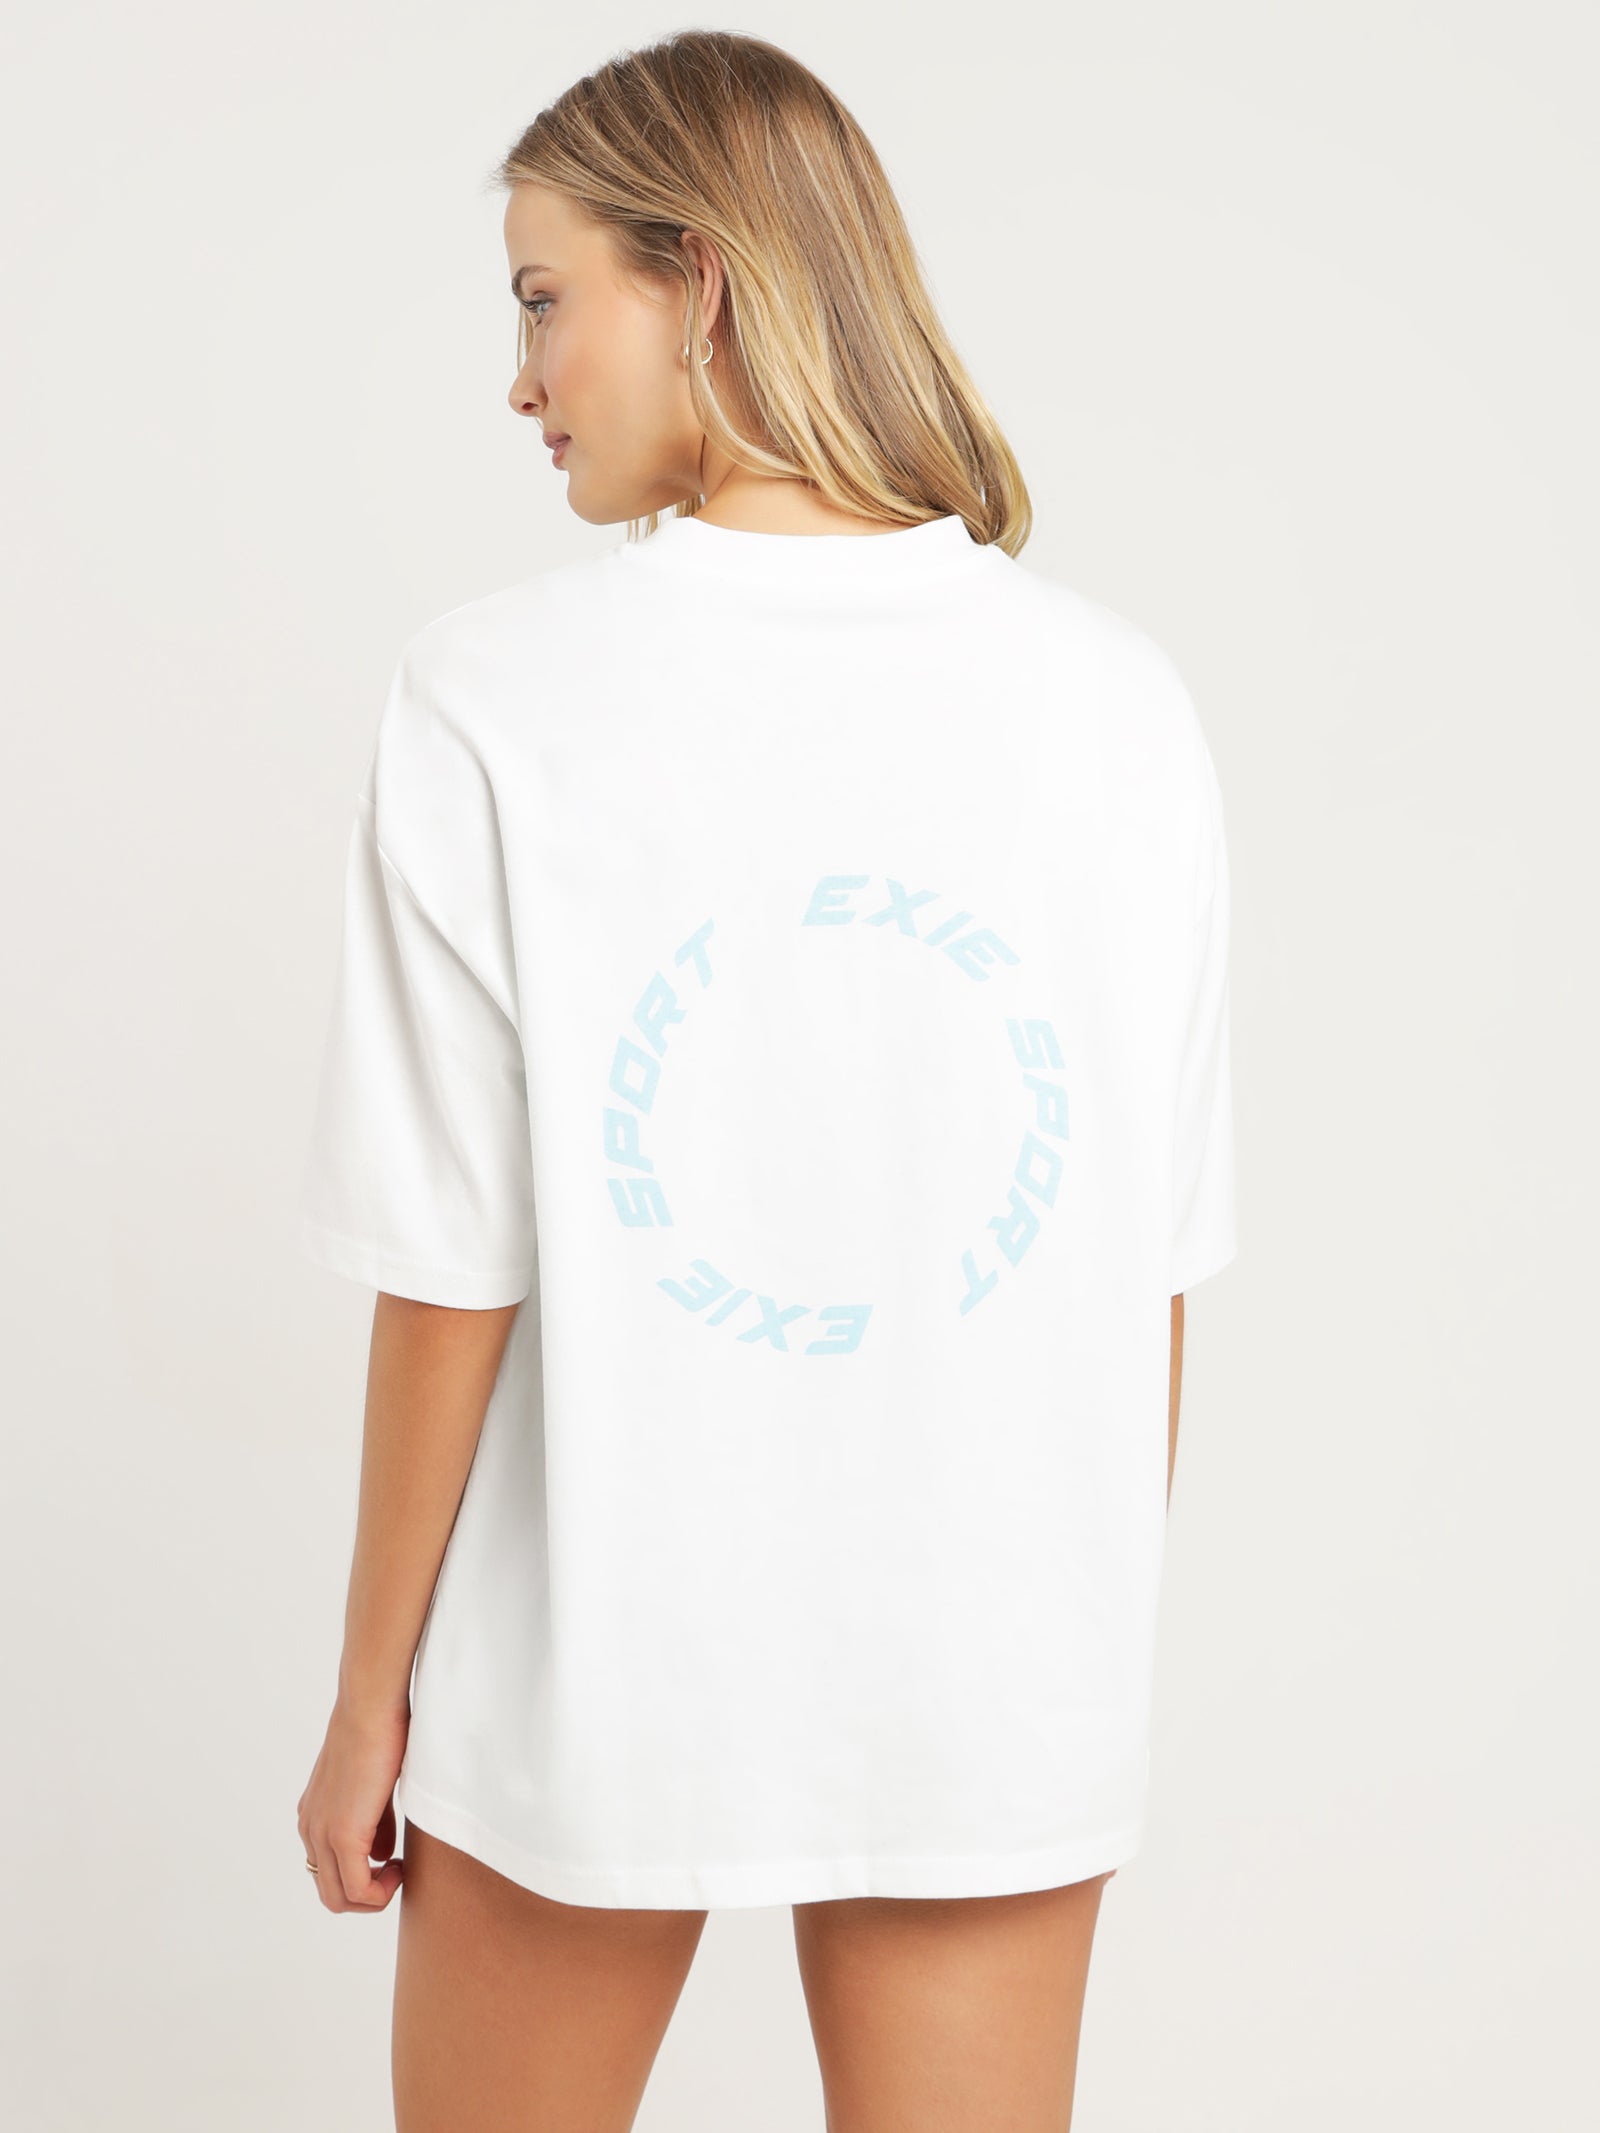 Garcon T-Shirt in White & Blue